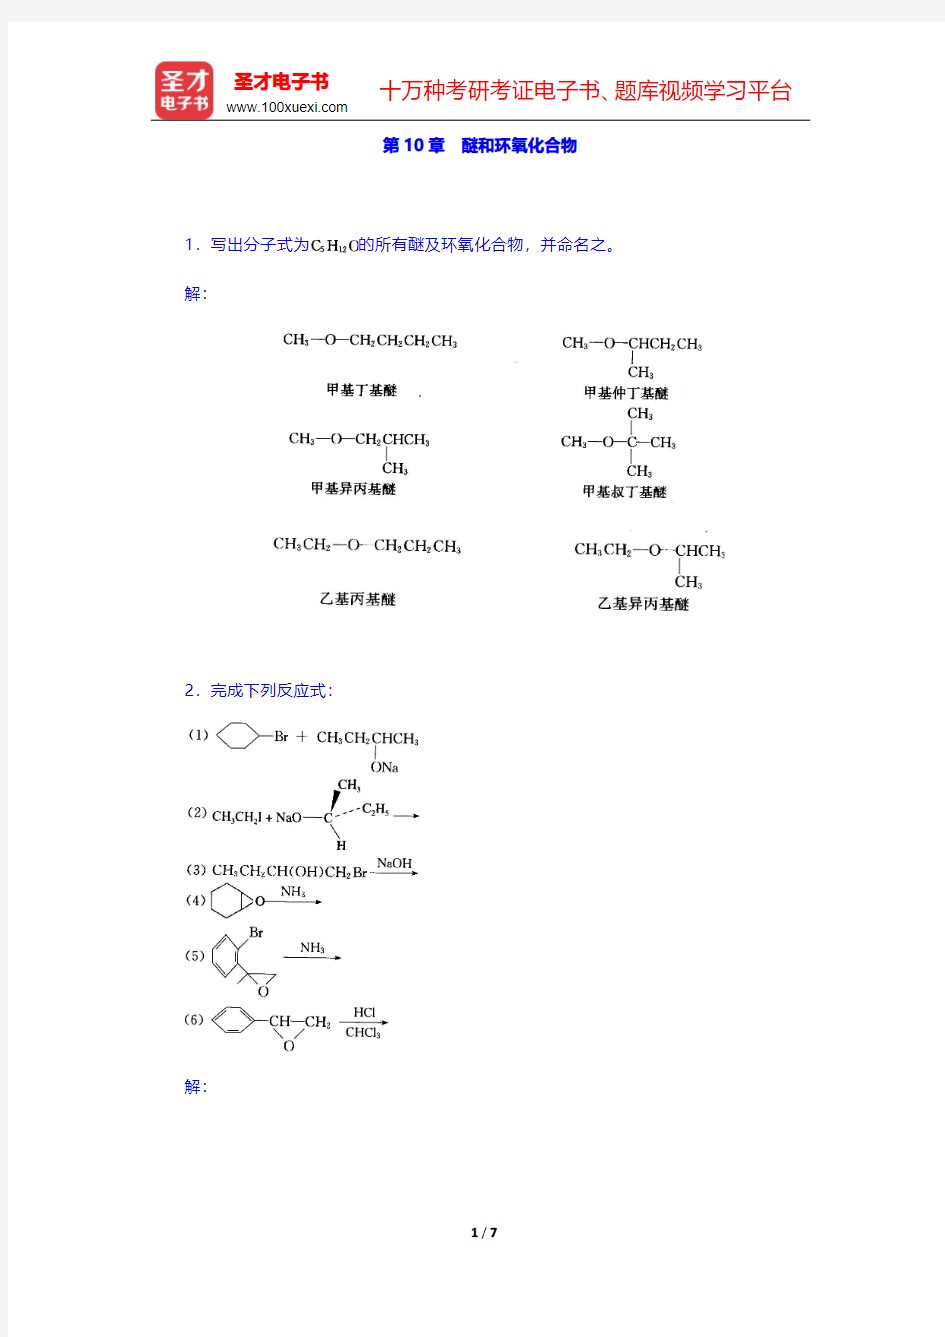 高鸿宾《有机化学》(第4版)课后习题-醚和环氧化合物 (圣才出品)